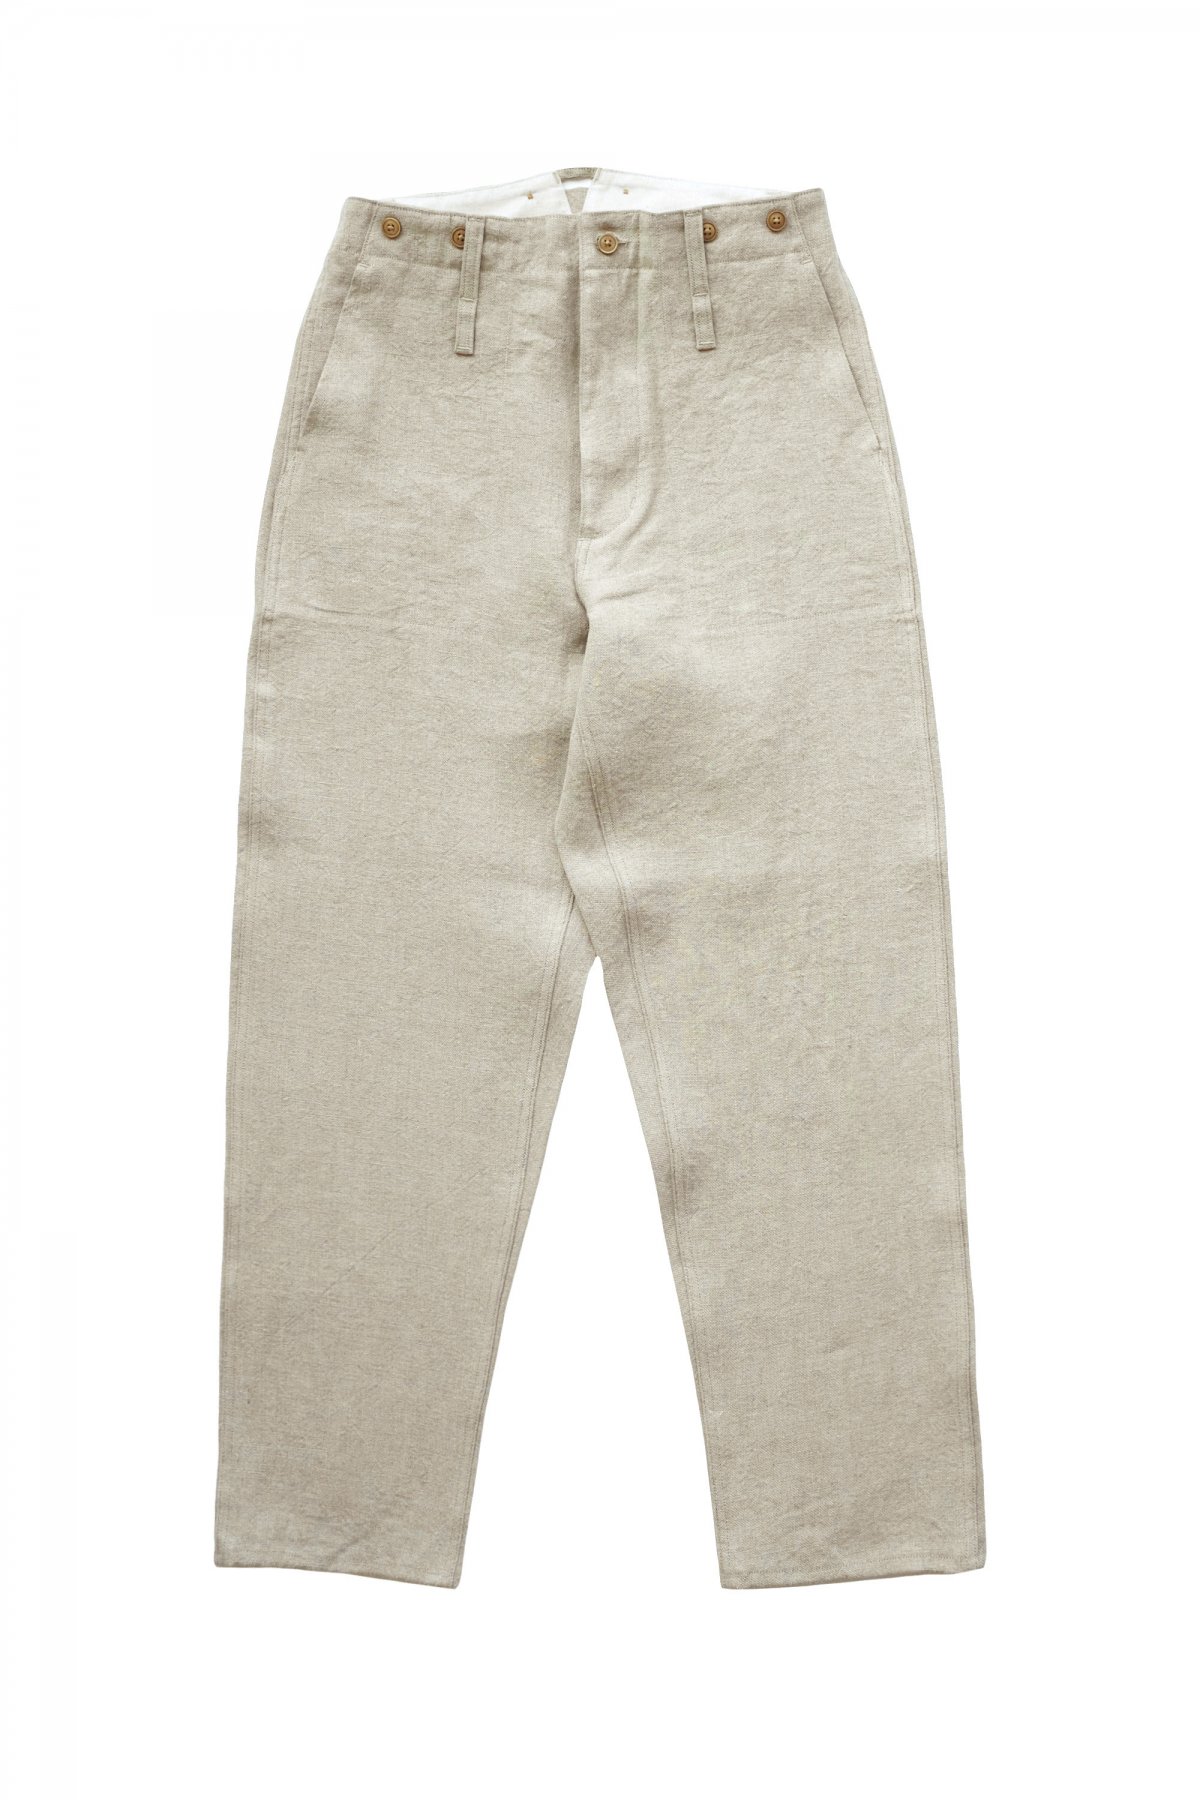 ナイジェルケーボン フレンチリネン ホスピタルジャケット パンツ セットアップ30cmパンツ裾幅